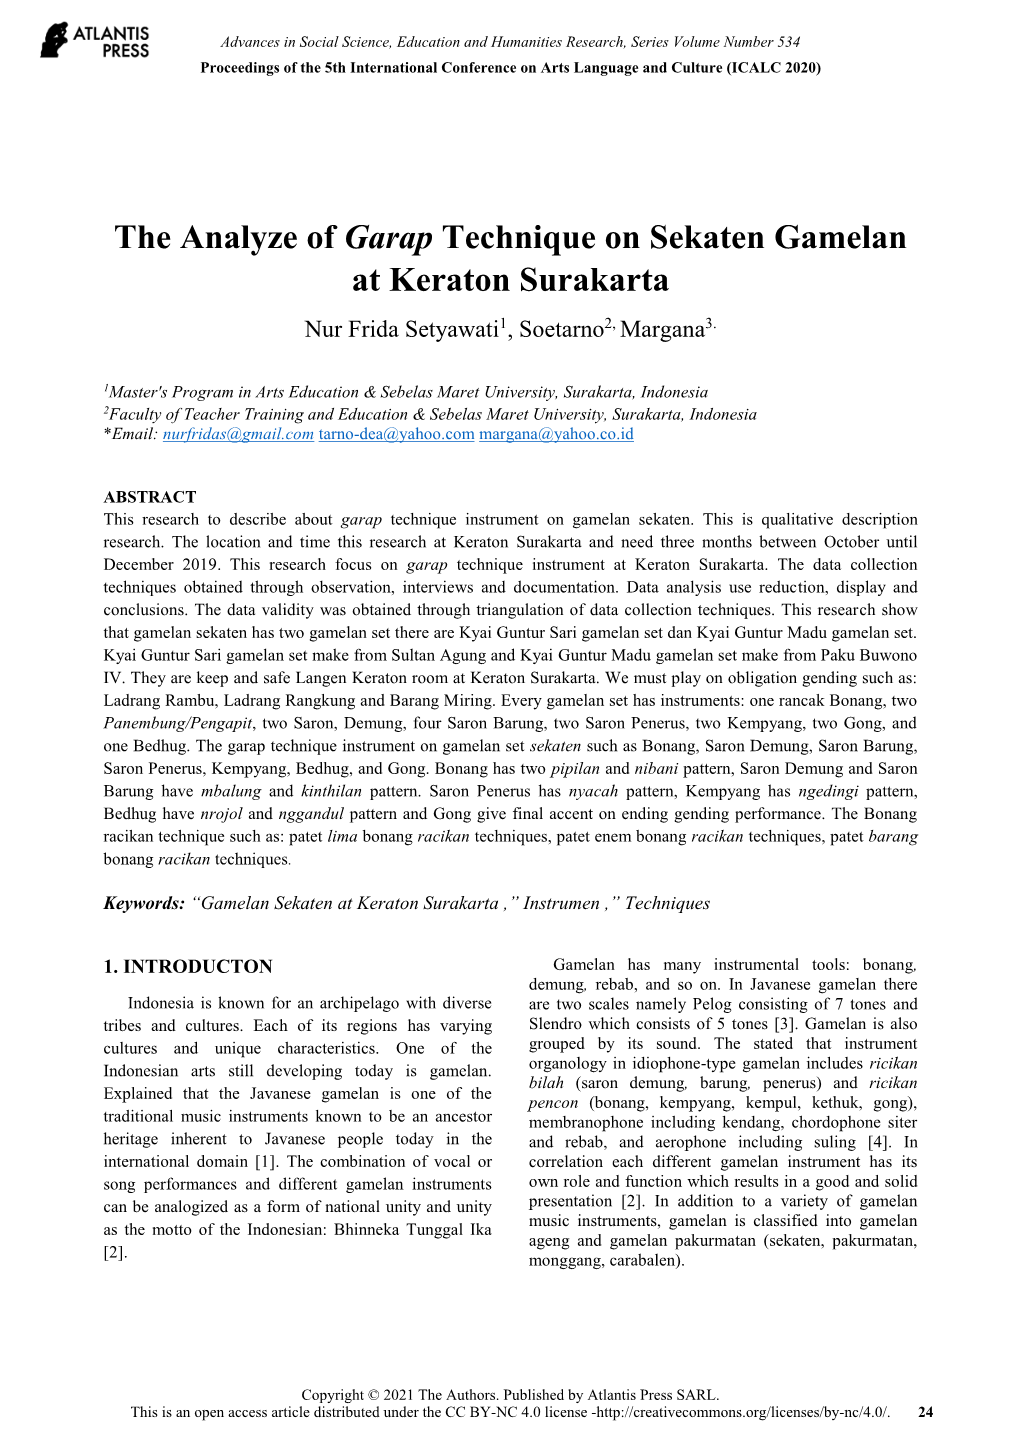 The Analyze of Garap Technique on Sekaten Gamelan at Keraton Surakarta Nur Frida Setyawati1, Soetarno2, Margana3